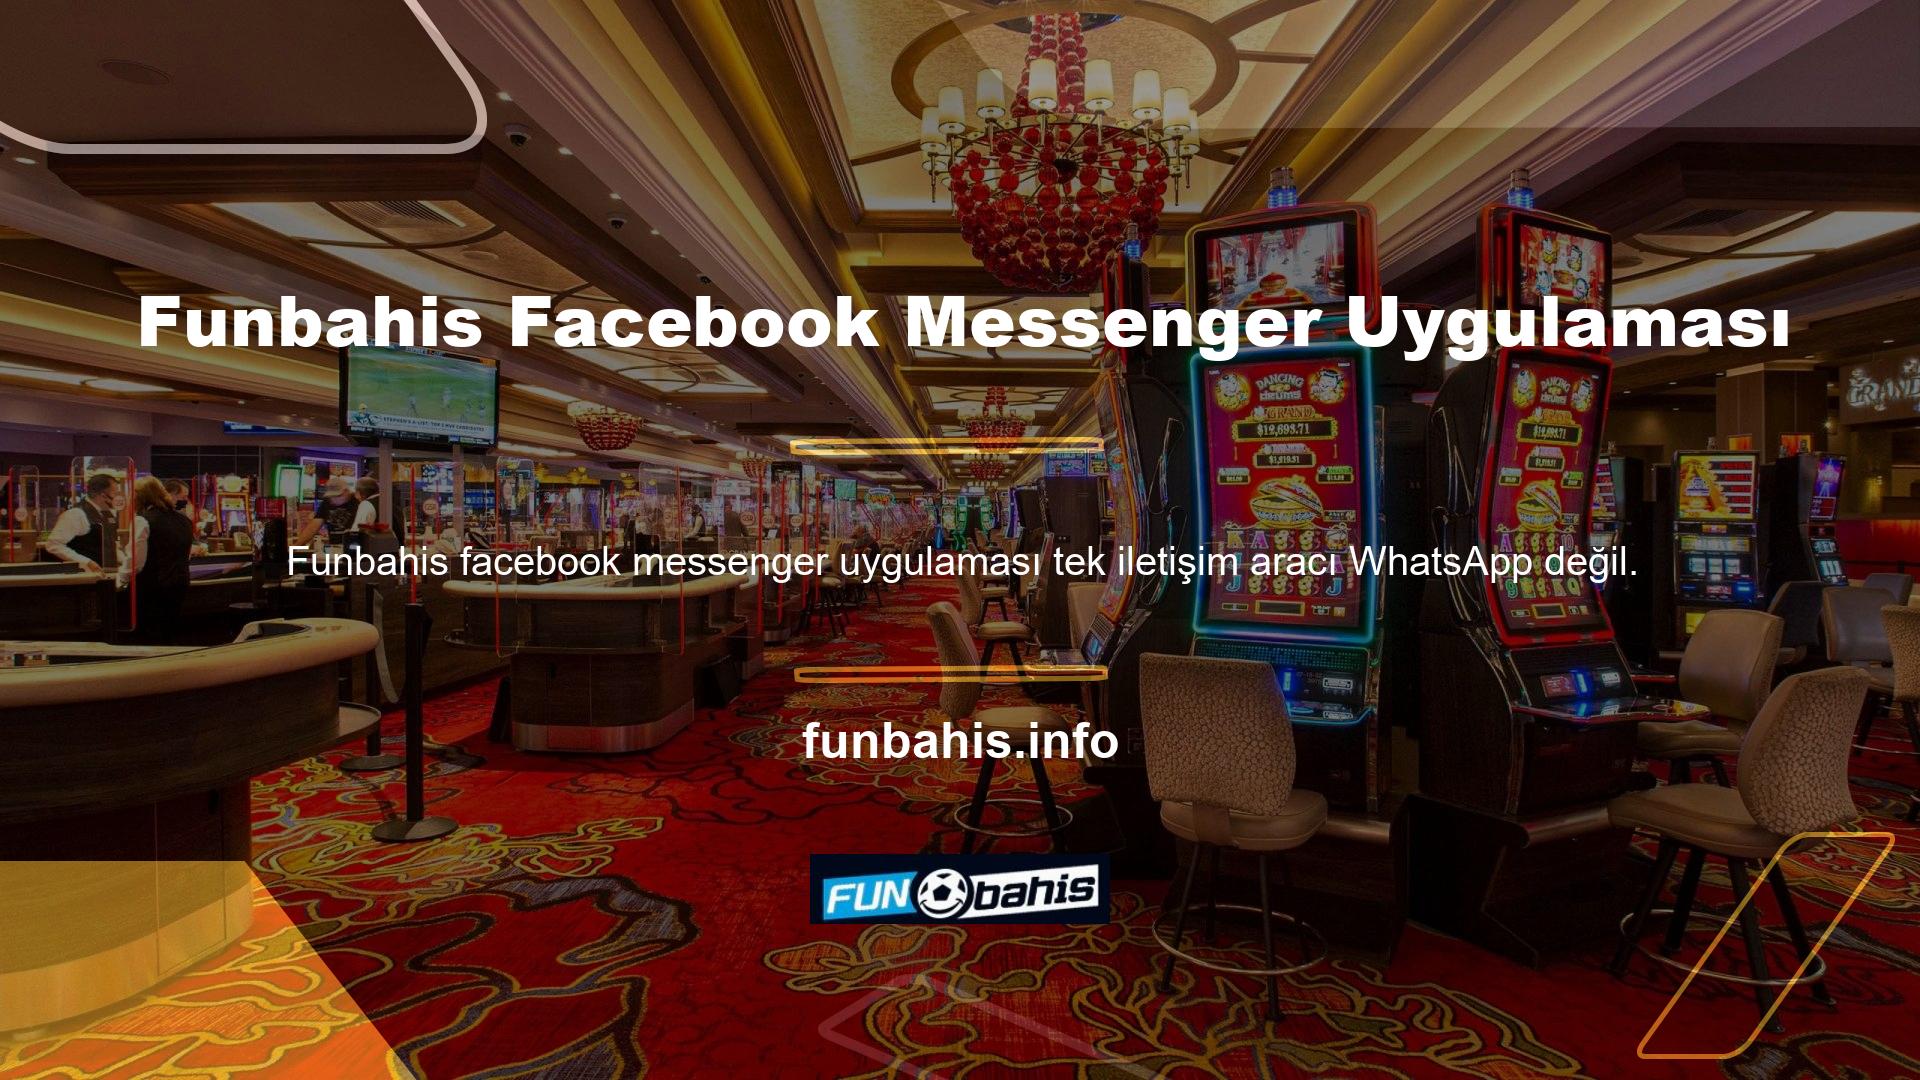 Funbahis Facebook Messenger uygulaması da çok iyi biliniyor